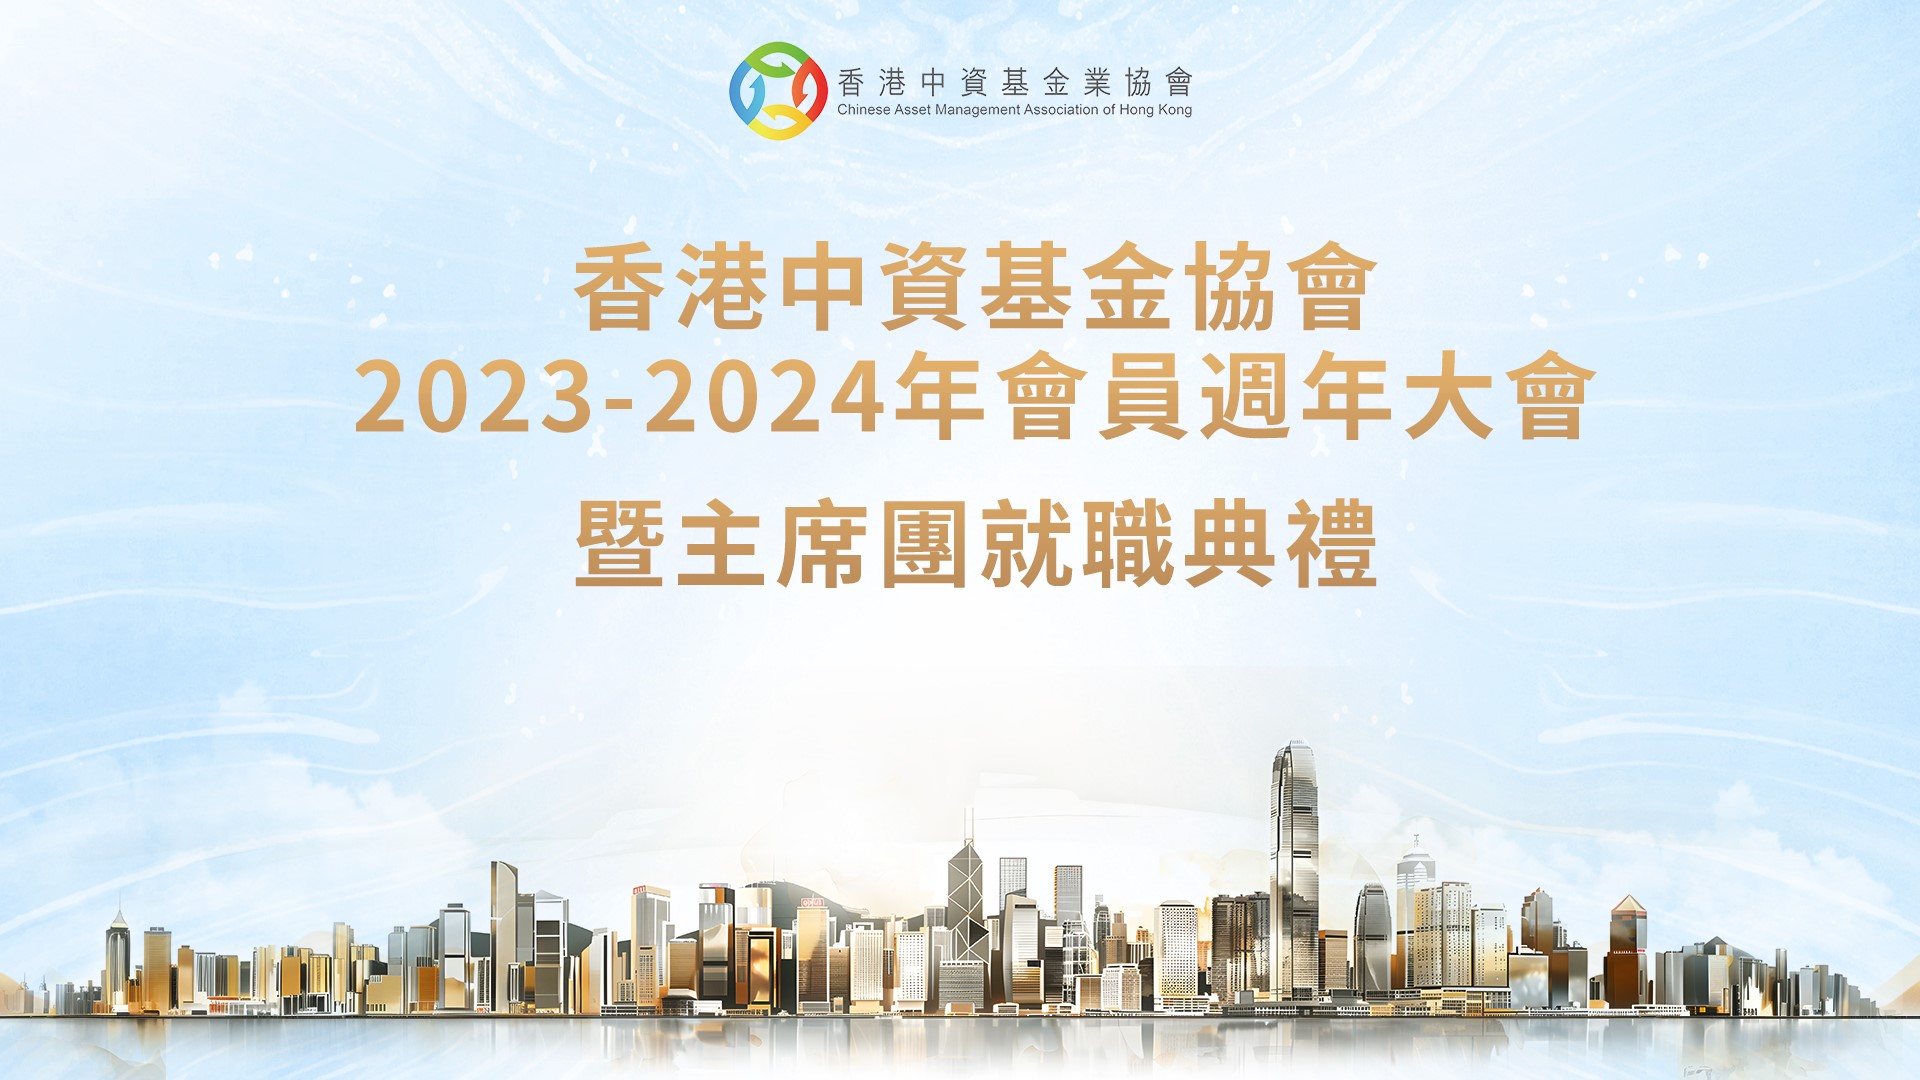 熱列慶祝香港中資基金業協會2024-2026年度主席團就職典禮成功舉行